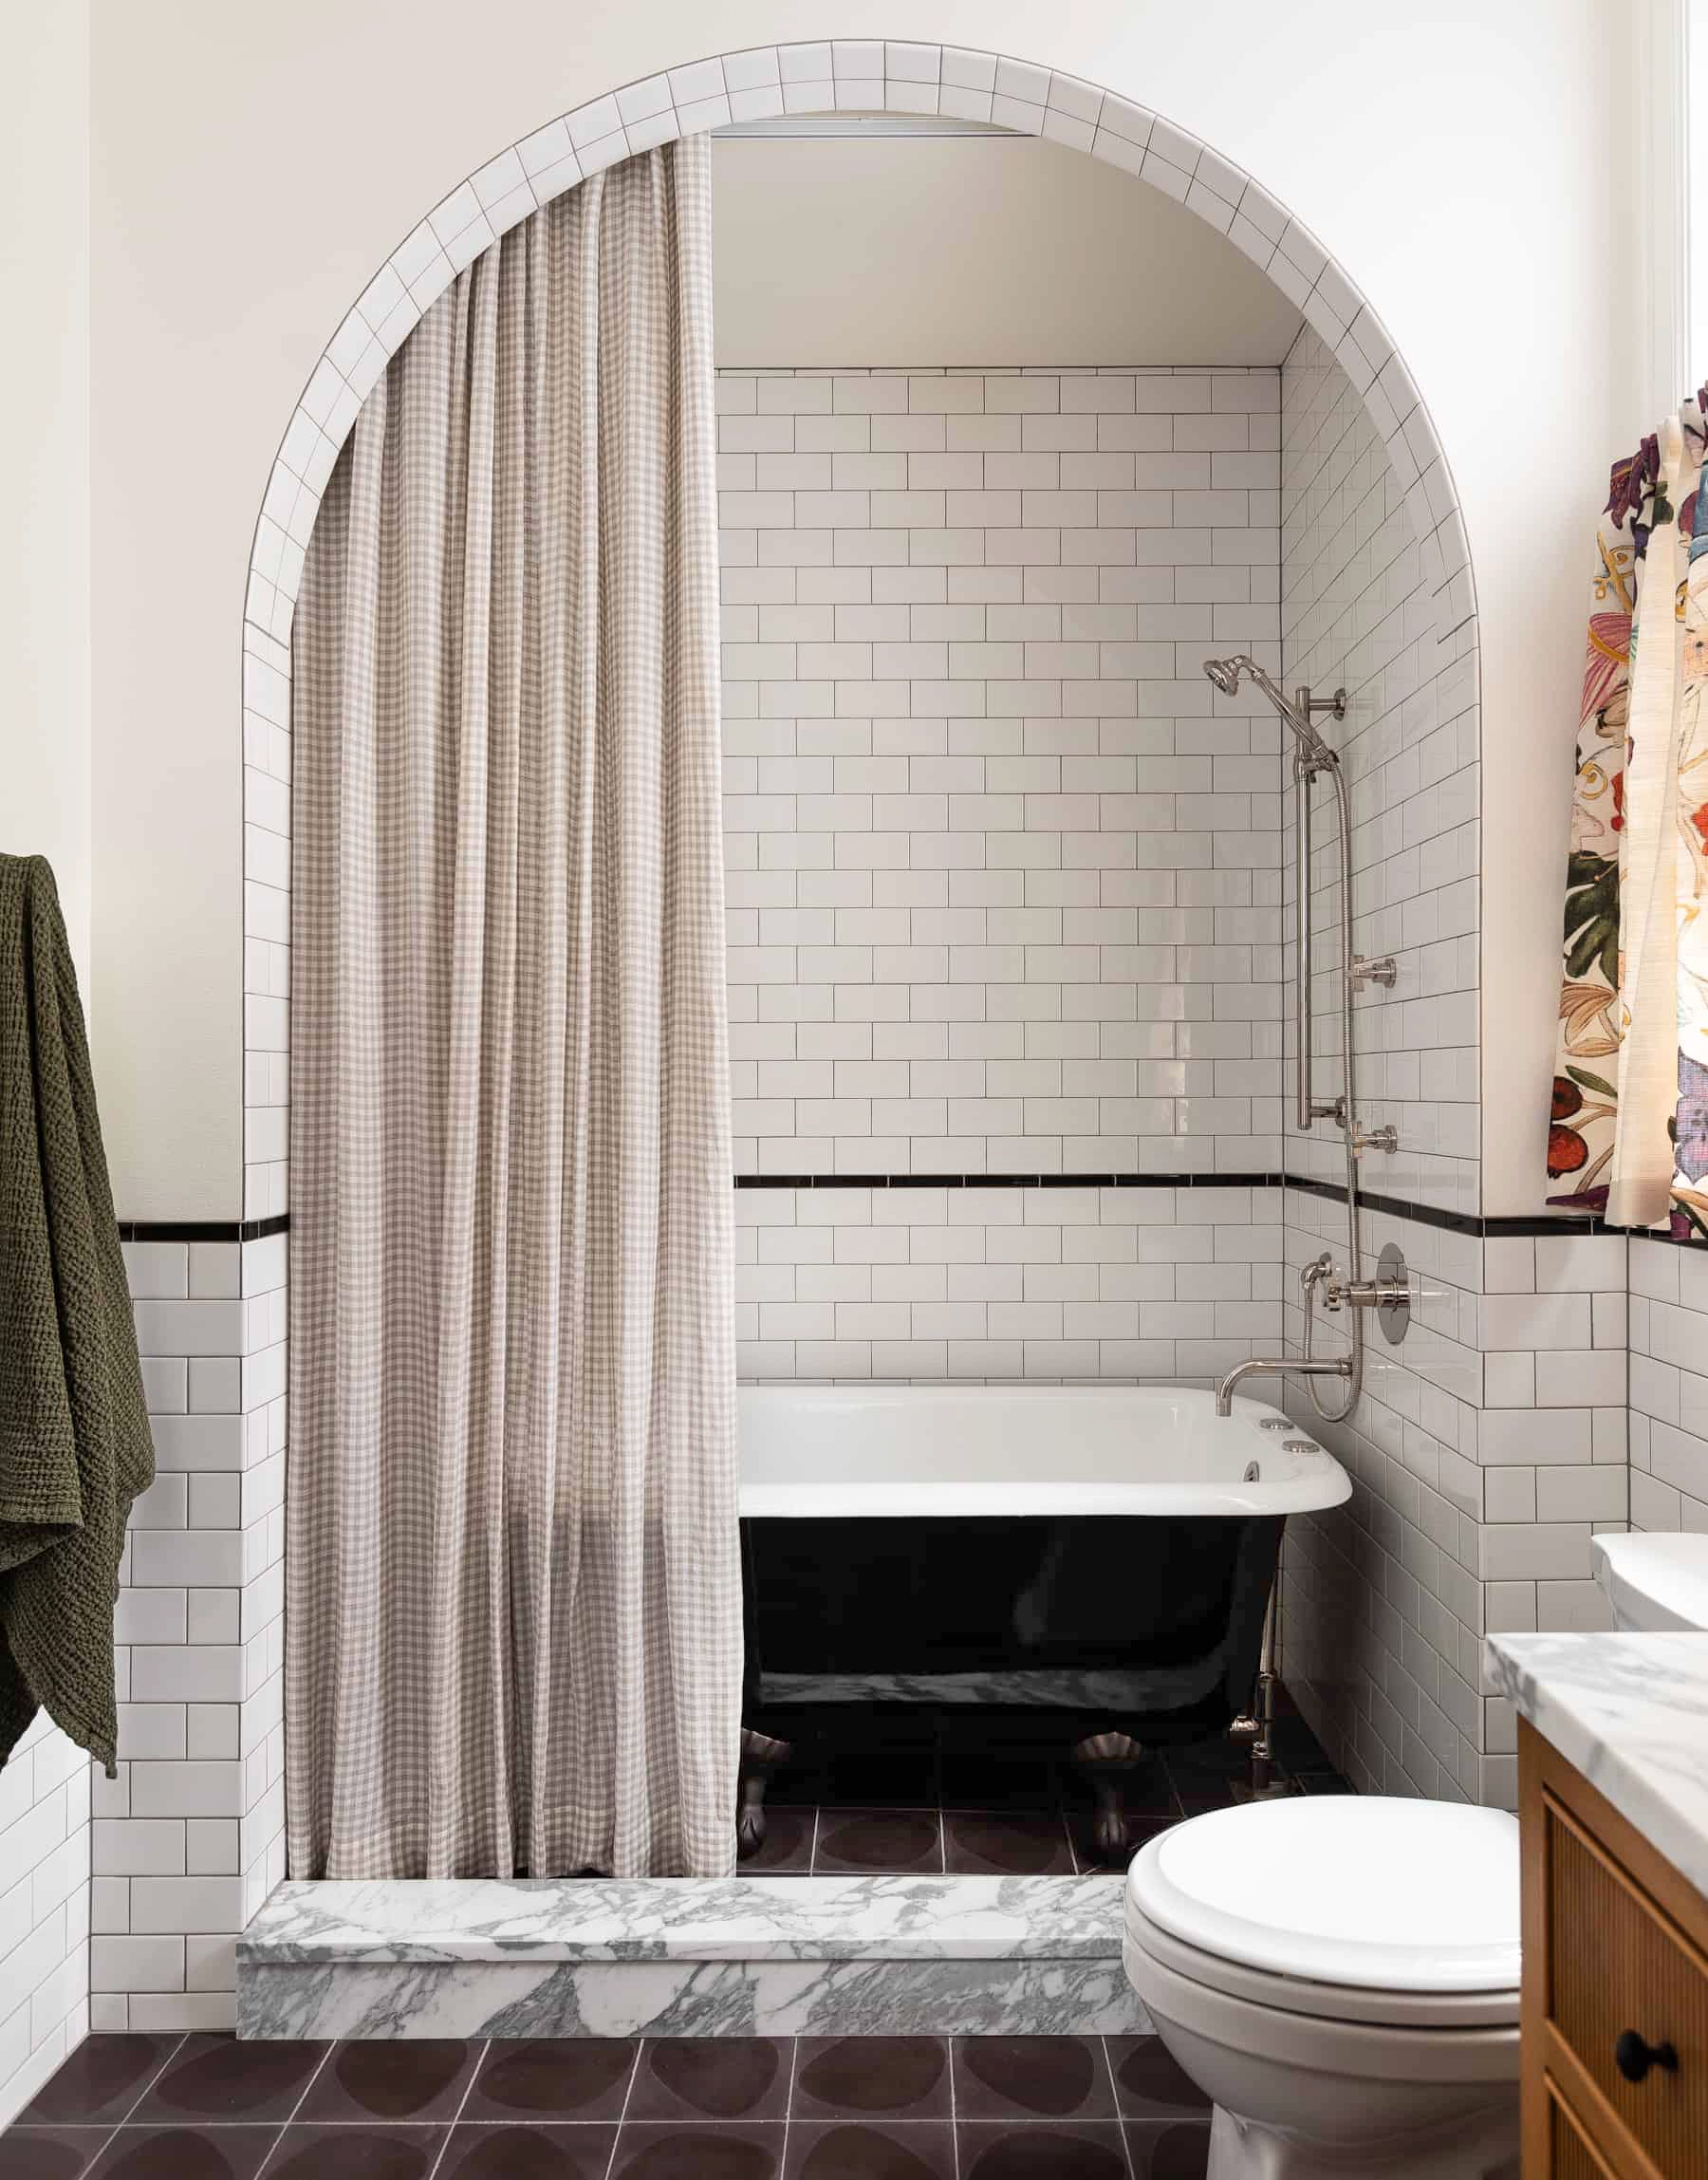 55 Bathroom Tile Ideas Bath, Contemporary Bathroom Tiles Uk